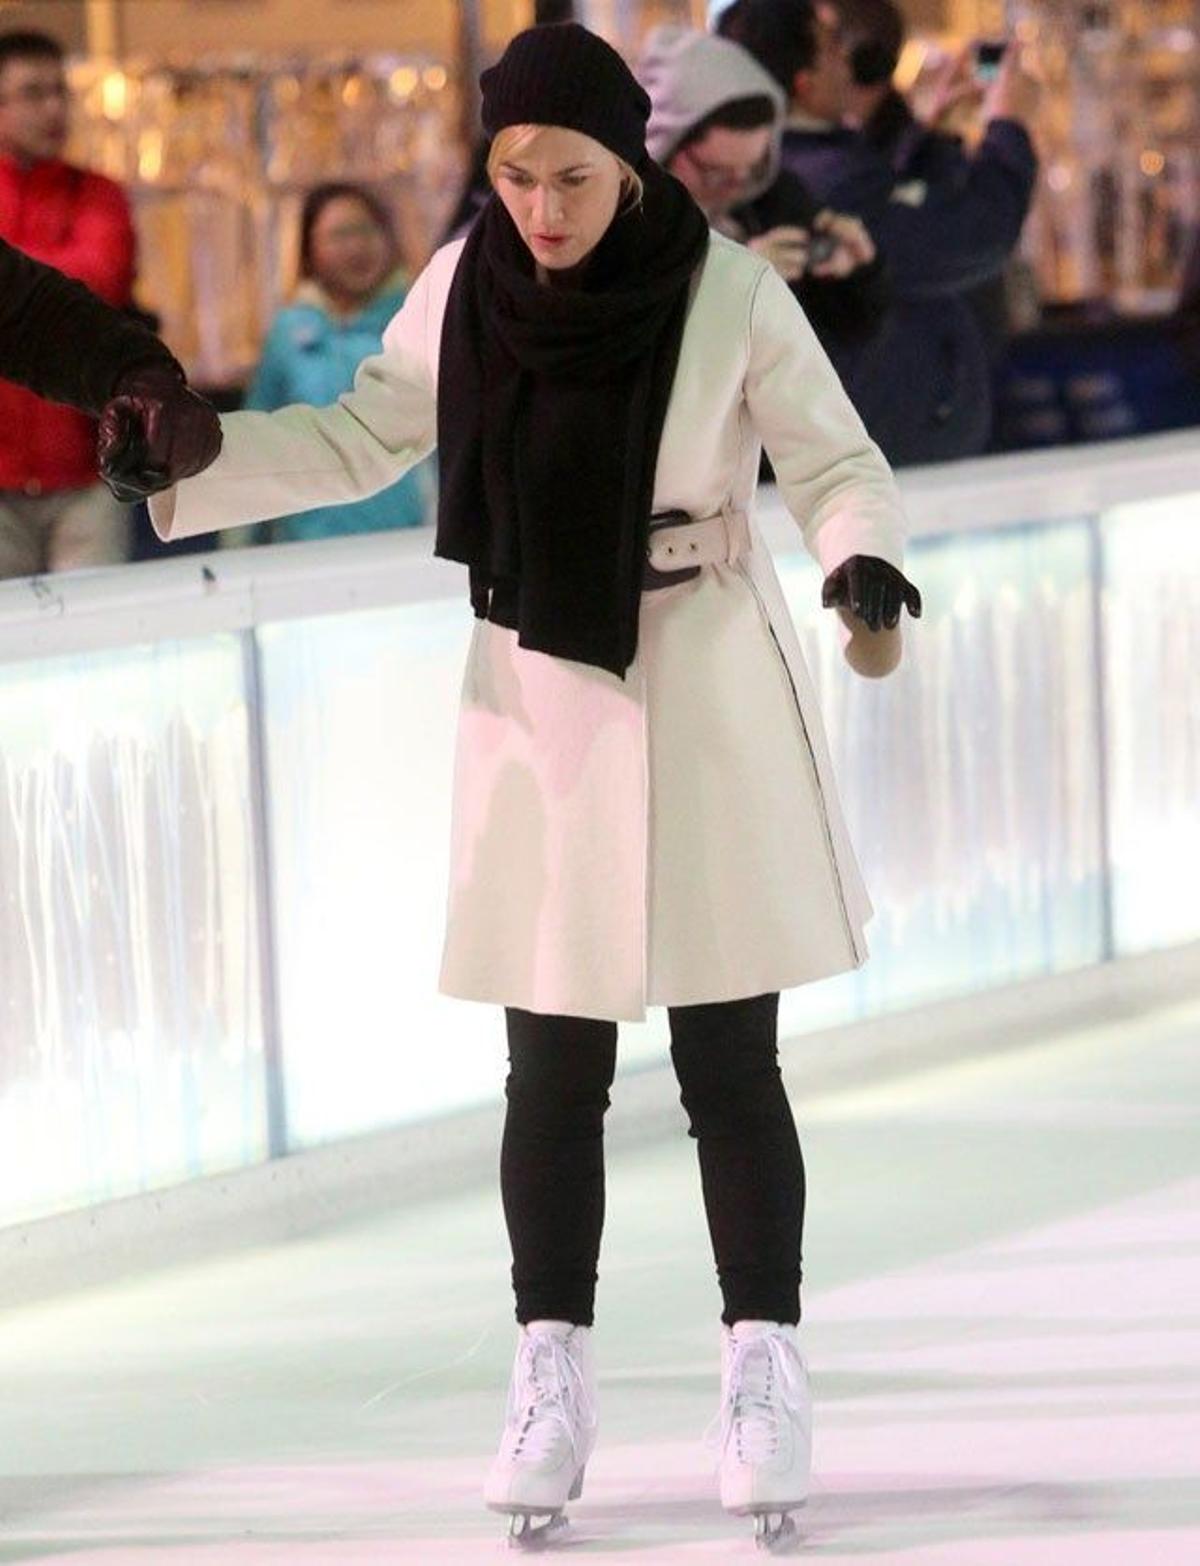 Kate Winslet, concentrada en el rodaje de su nueva película 'Collateral Beauty'. La actriz está pendiente de no caerse mientras está patinando sobre hielo.